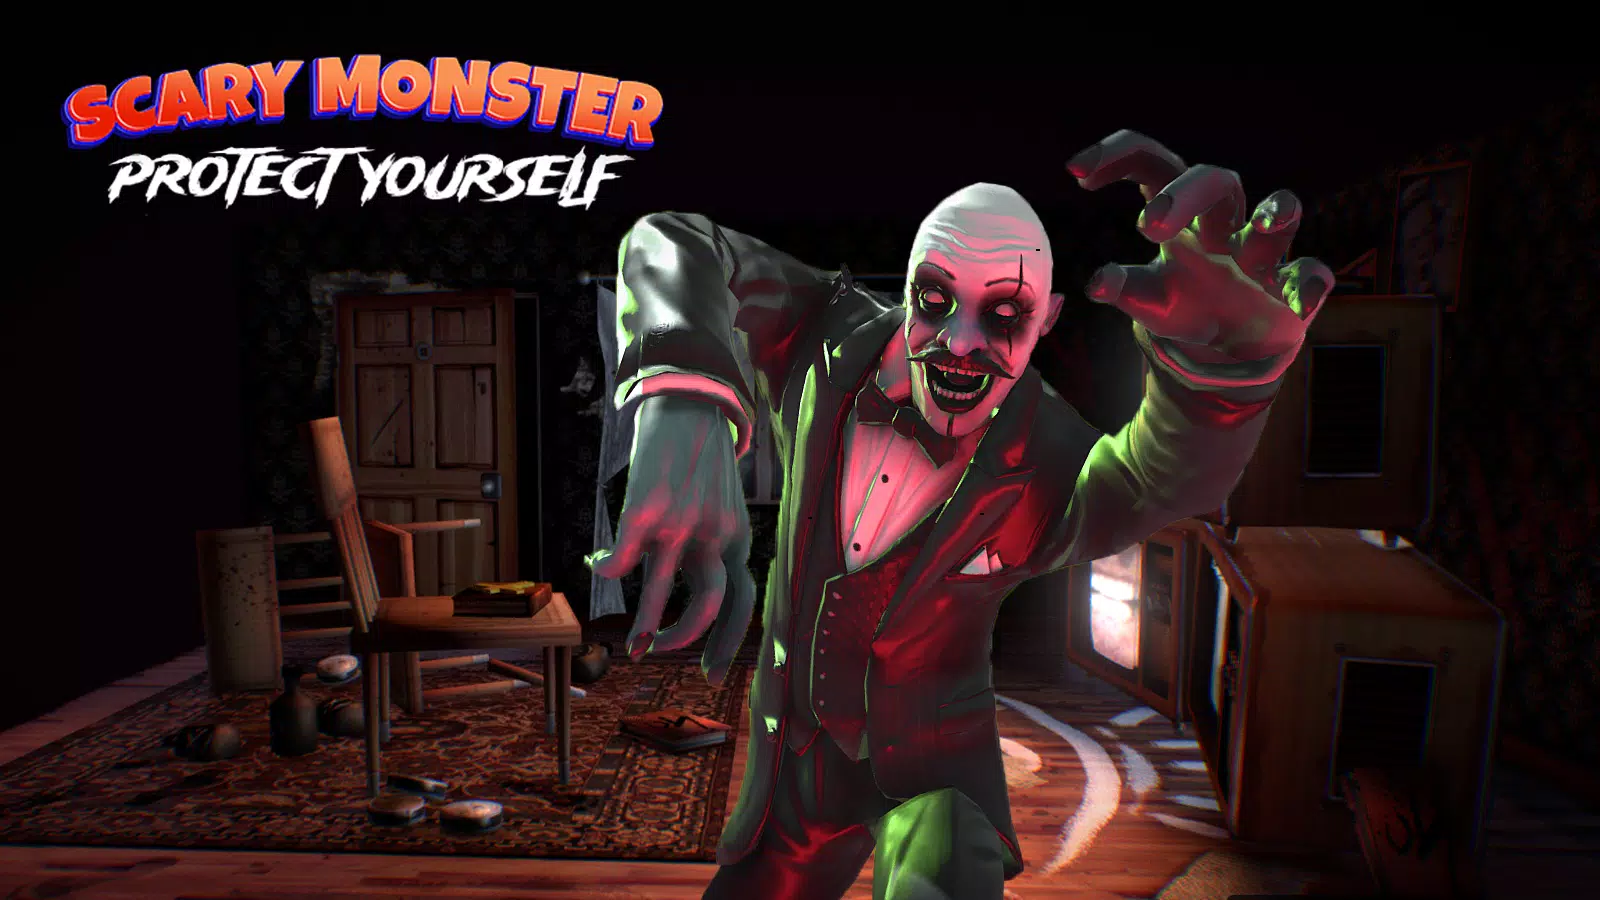 Download do APK de jogo de monstro assustador 3d para Android